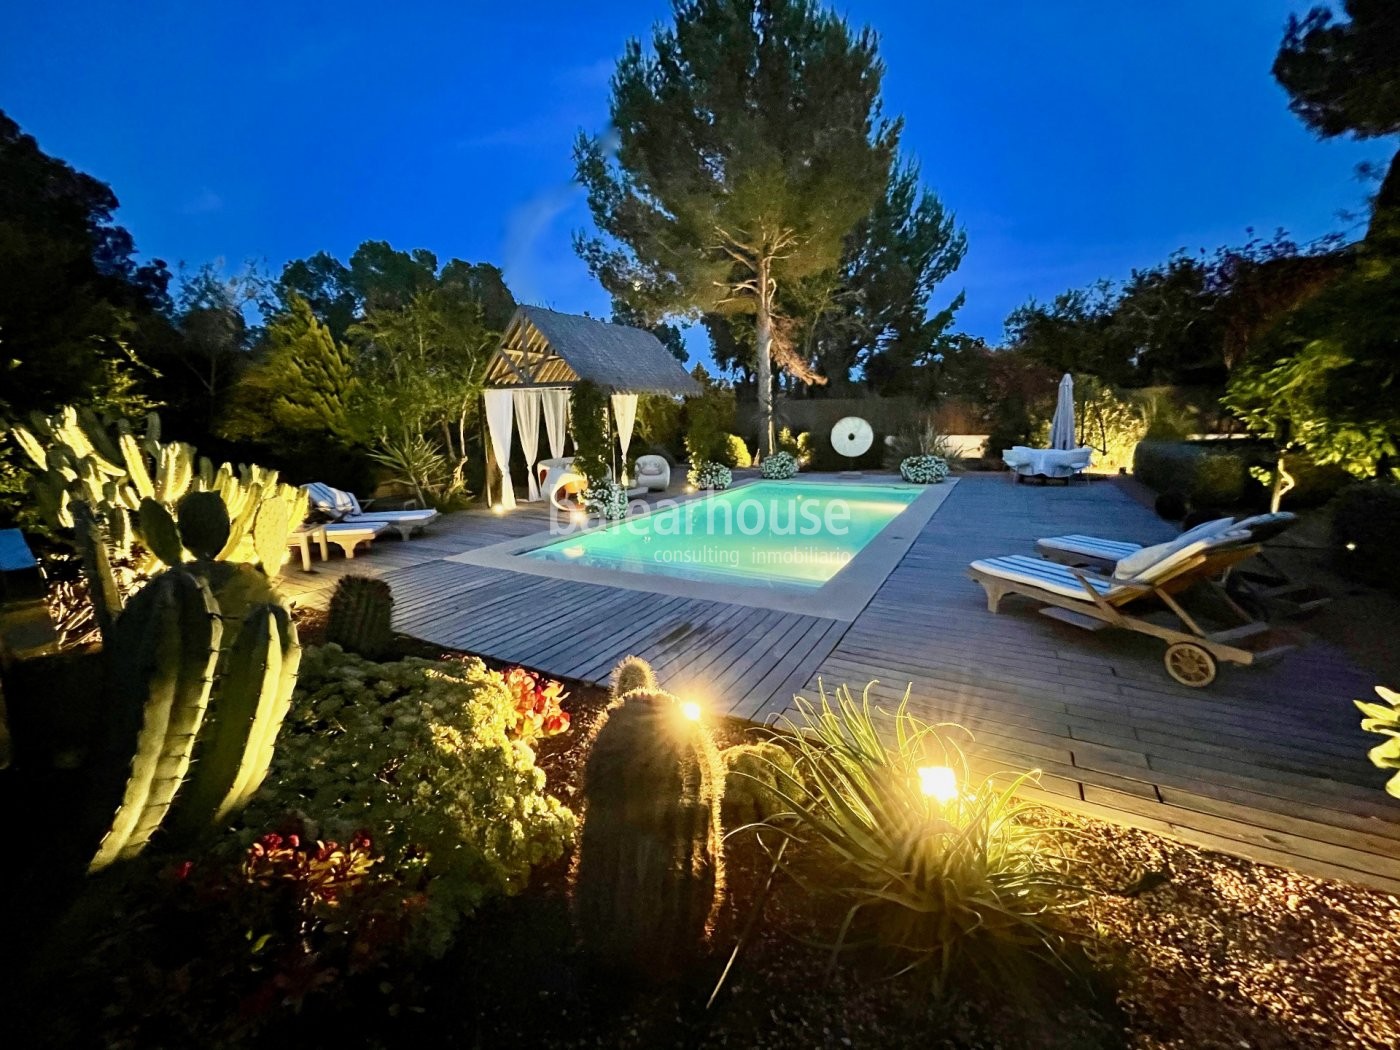 Preciosa villa junto a bonitas calas en Sol de Mallorca con piscina y fresca vegetación mediterránea